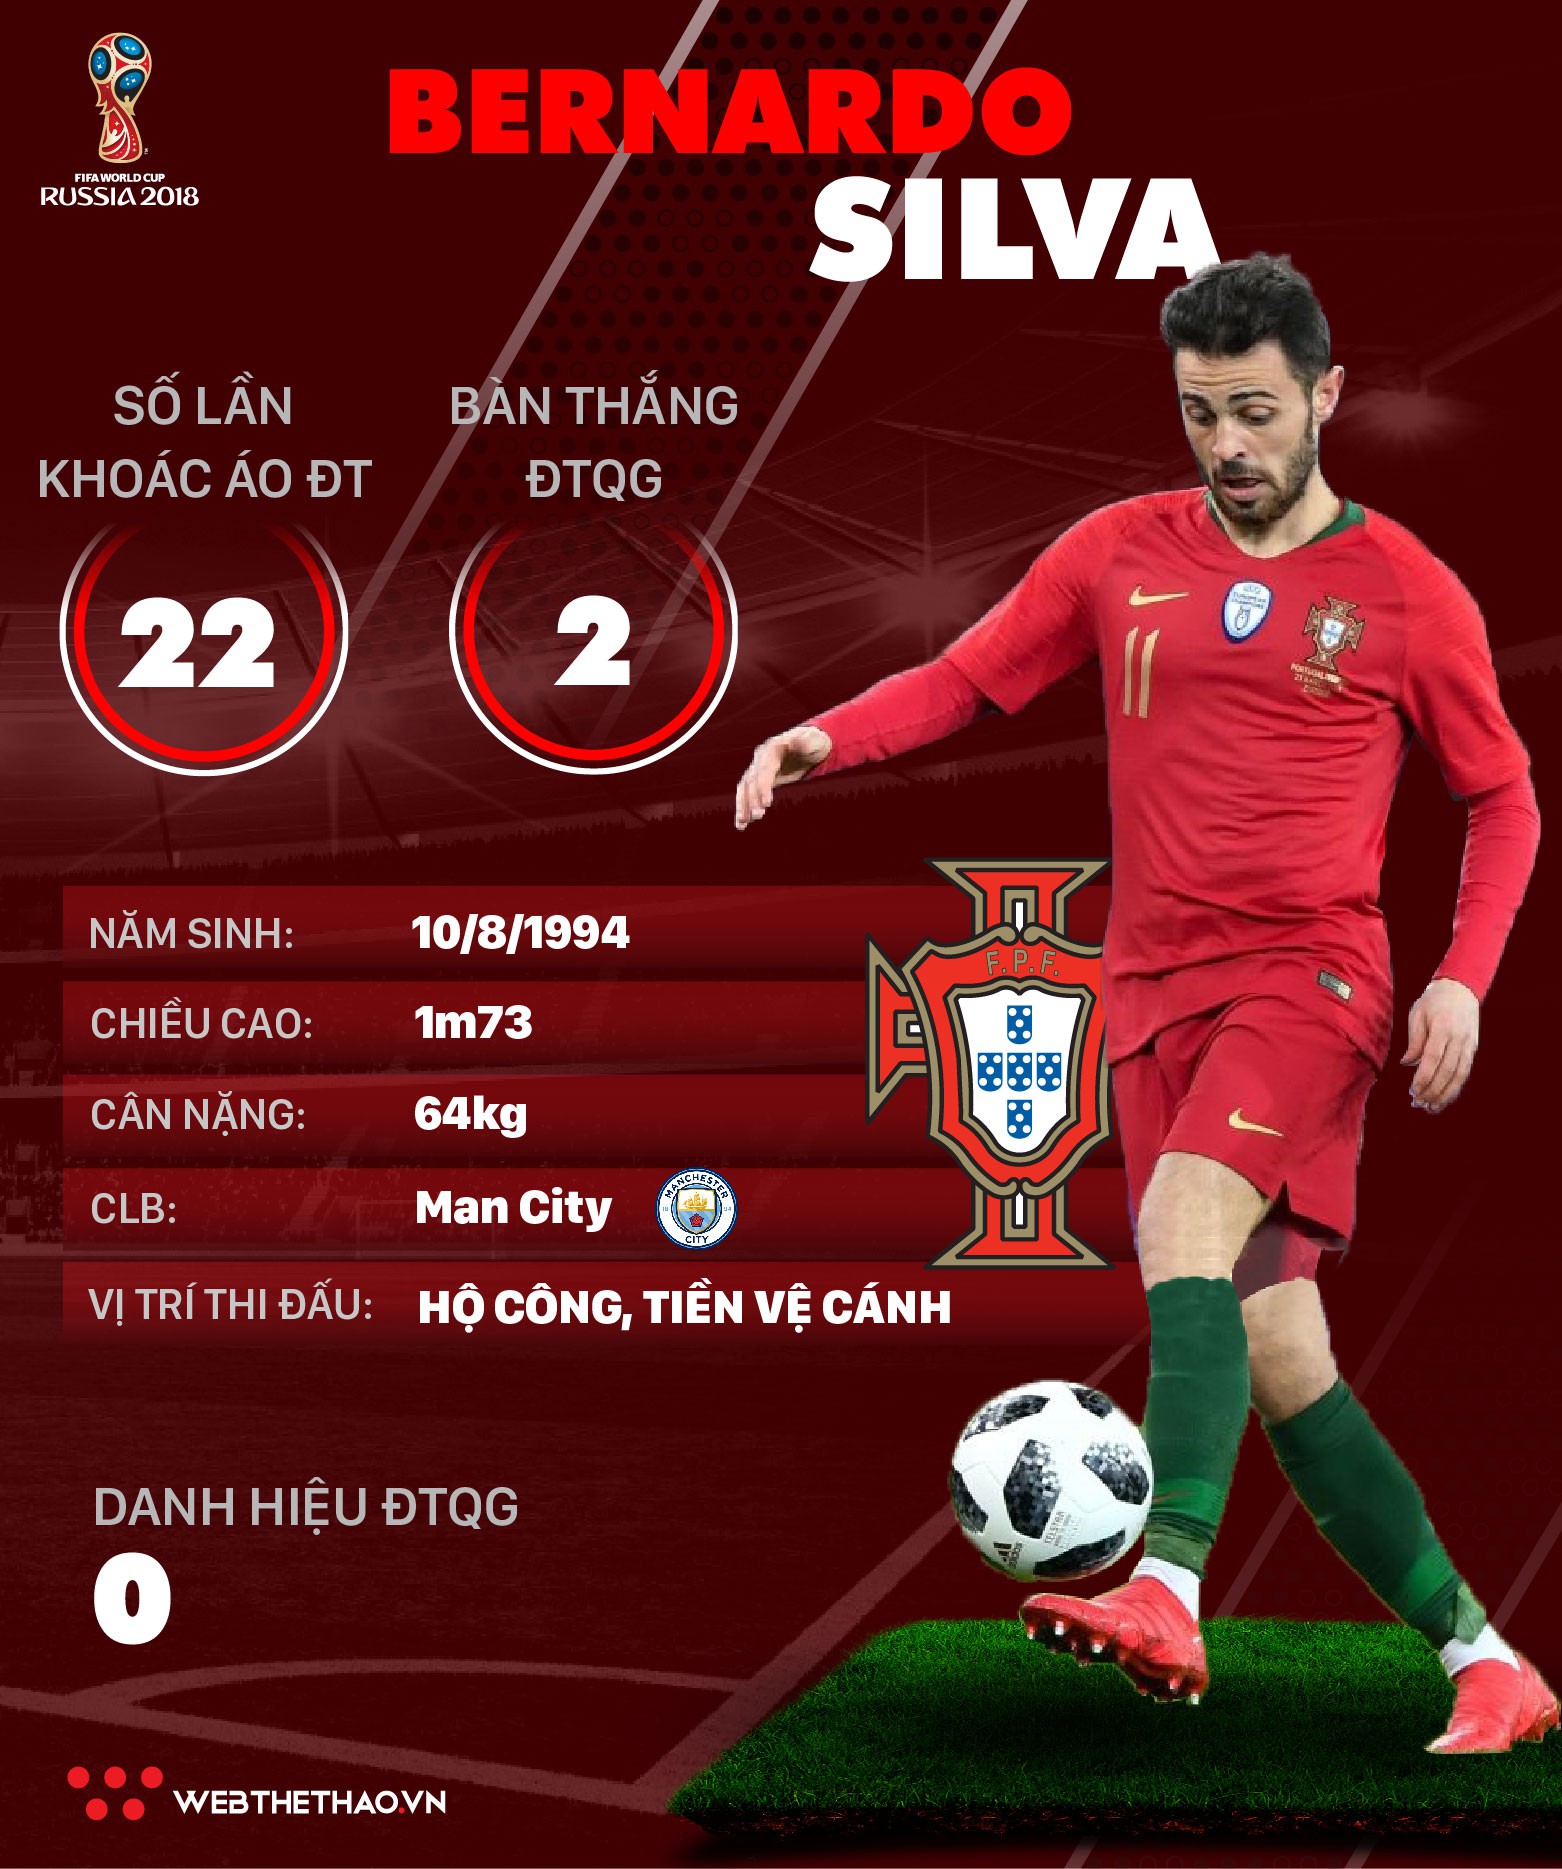 Thông tin cầu thủ Bernardo Silva của ĐT Bồ Đào Nha dự World Cup 2018 - Ảnh 1.